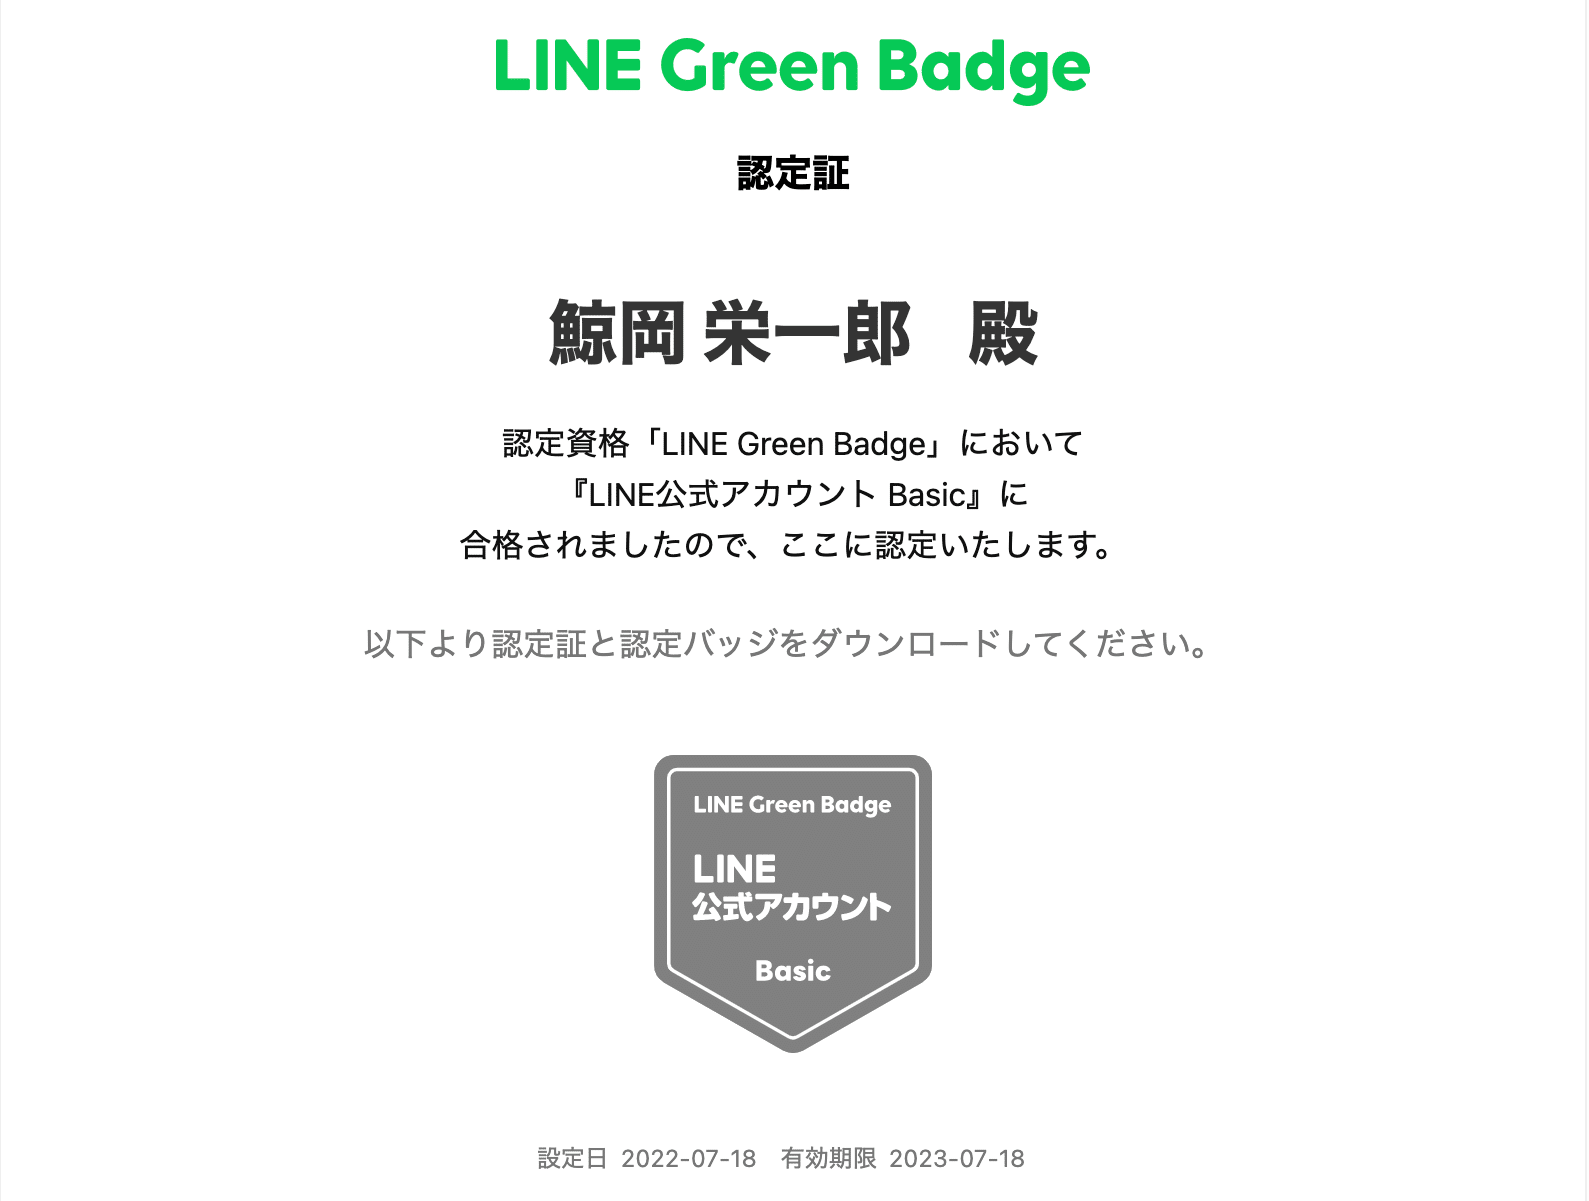 認定資格 LINEGreenBadge の「LINE公式アカウントBasic」に合格 